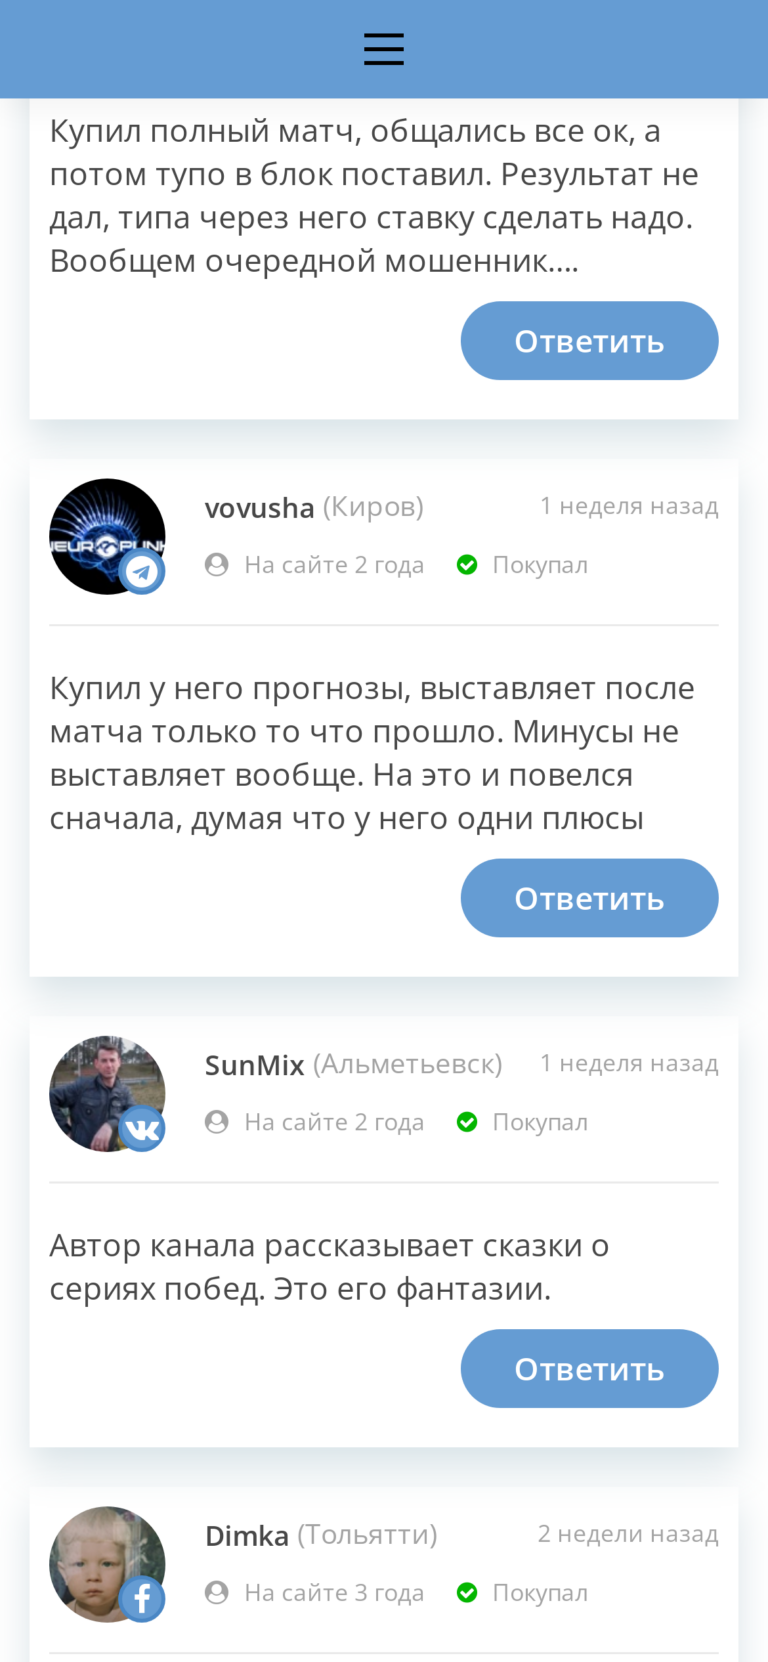 Олег Нуриев отзывы игроков